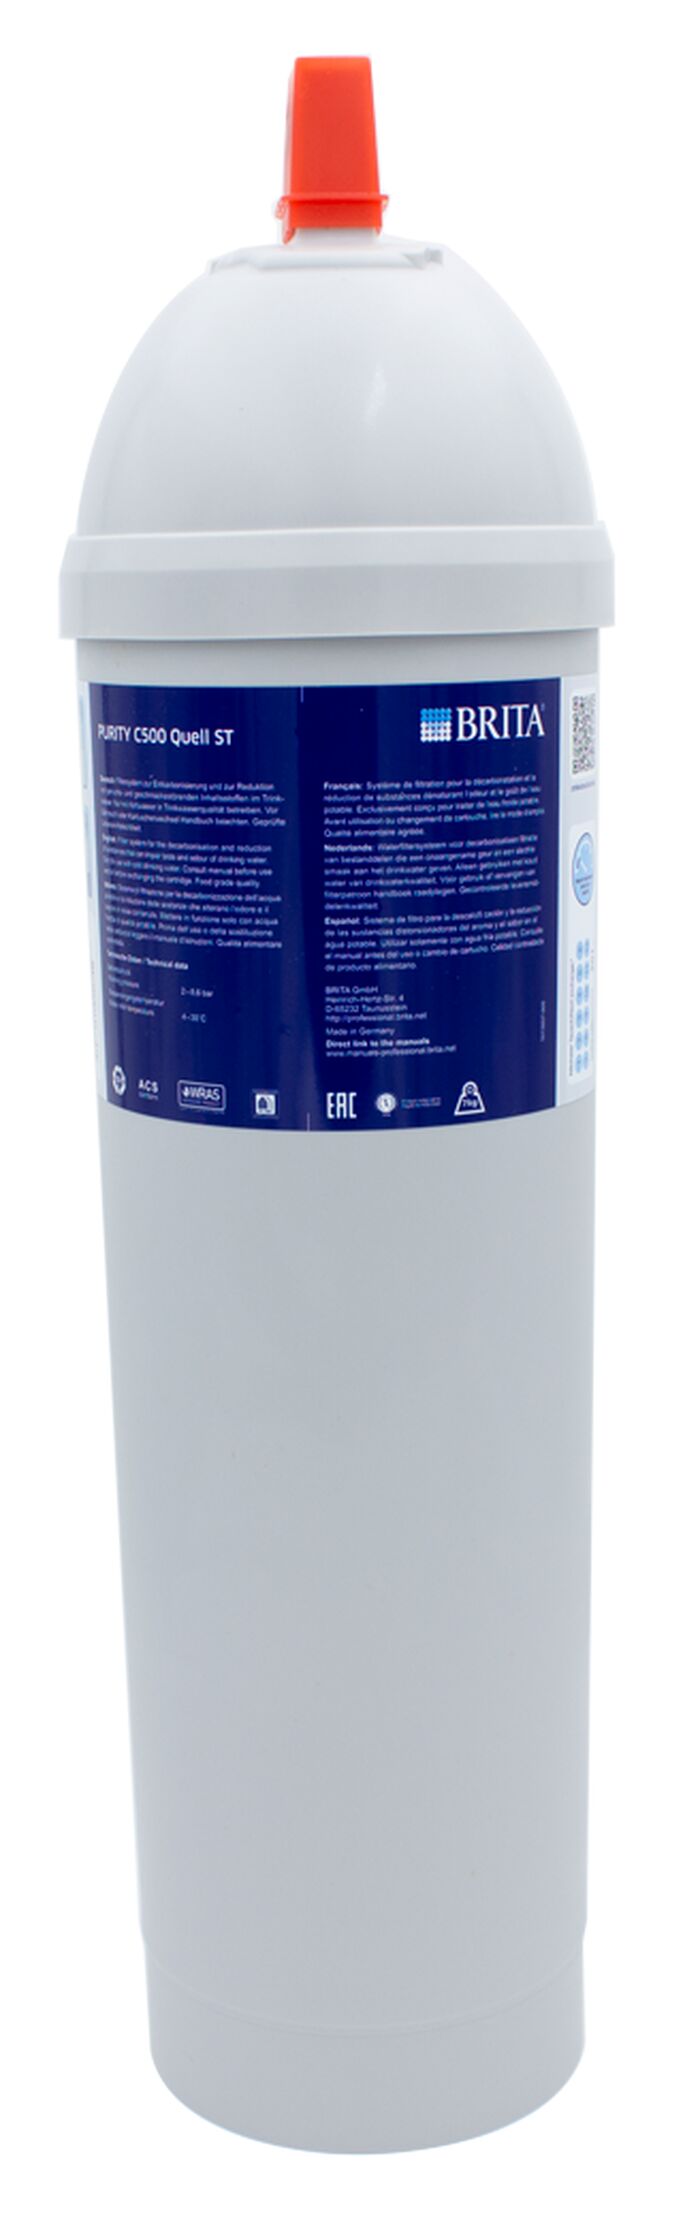 Genuine Brita Purity C500 Quell ST water filter cartridge by BRITA